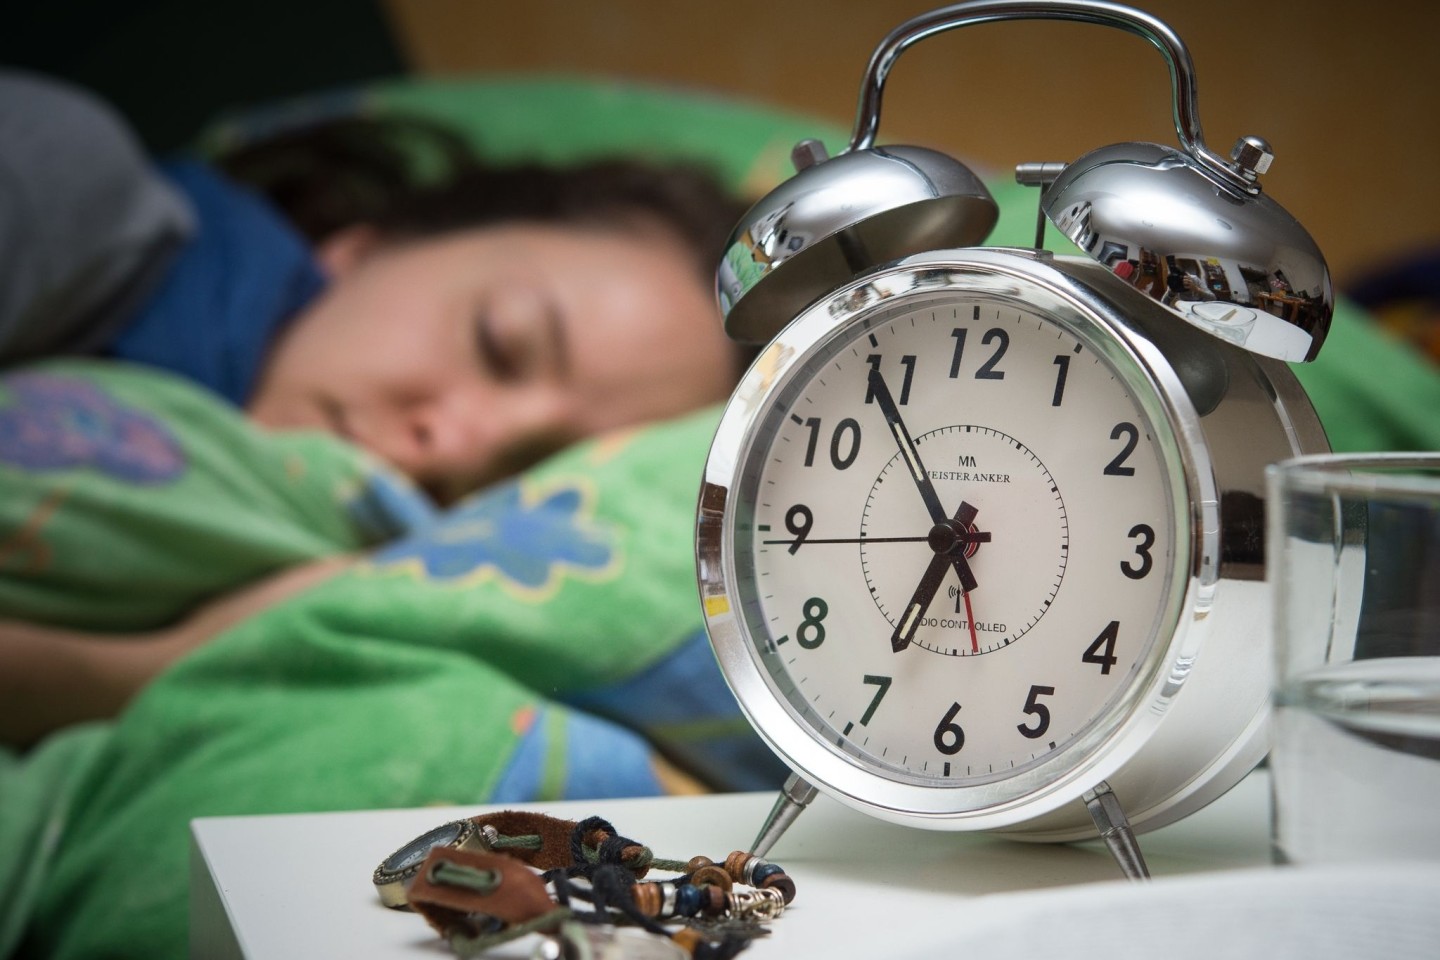 Eine neue Studie zeigt: Sieben Stunden Nachtruhe sind die ideale Schlafdauer für Menschen mittleren und hohen Alters.